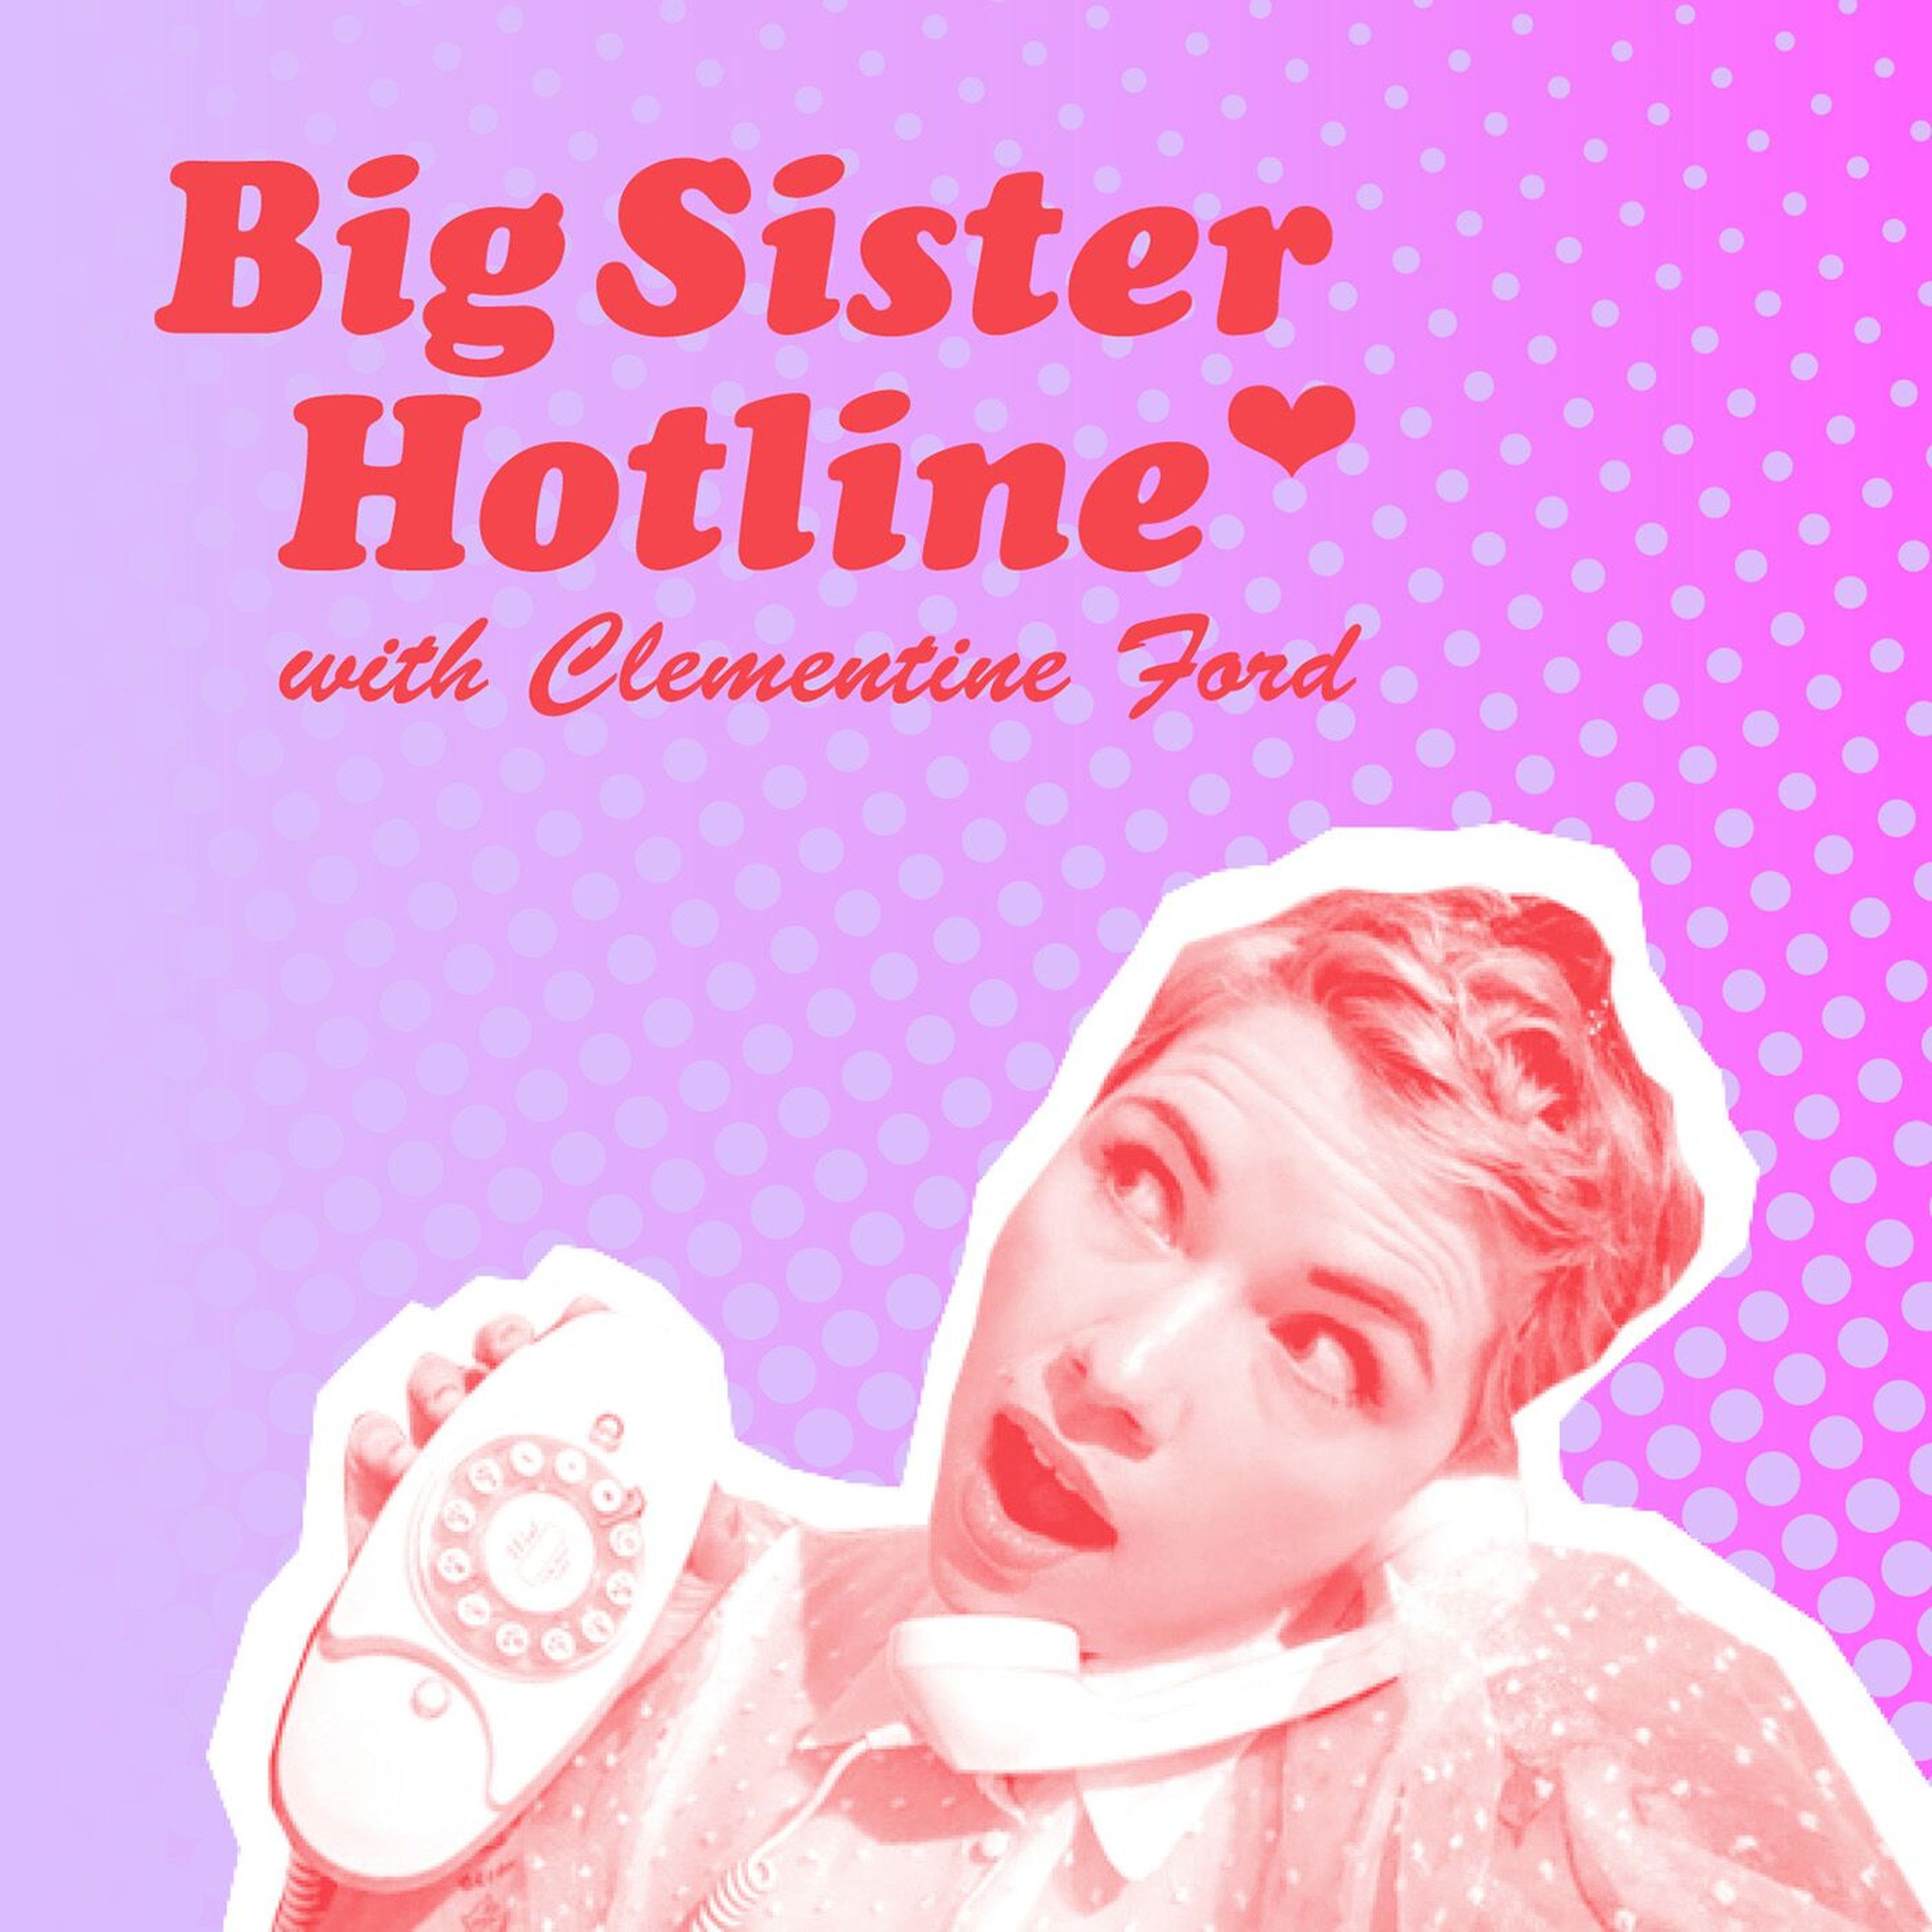 REPLAY! Big Sister Hotline, with SAYOMI ARIYAWANSA